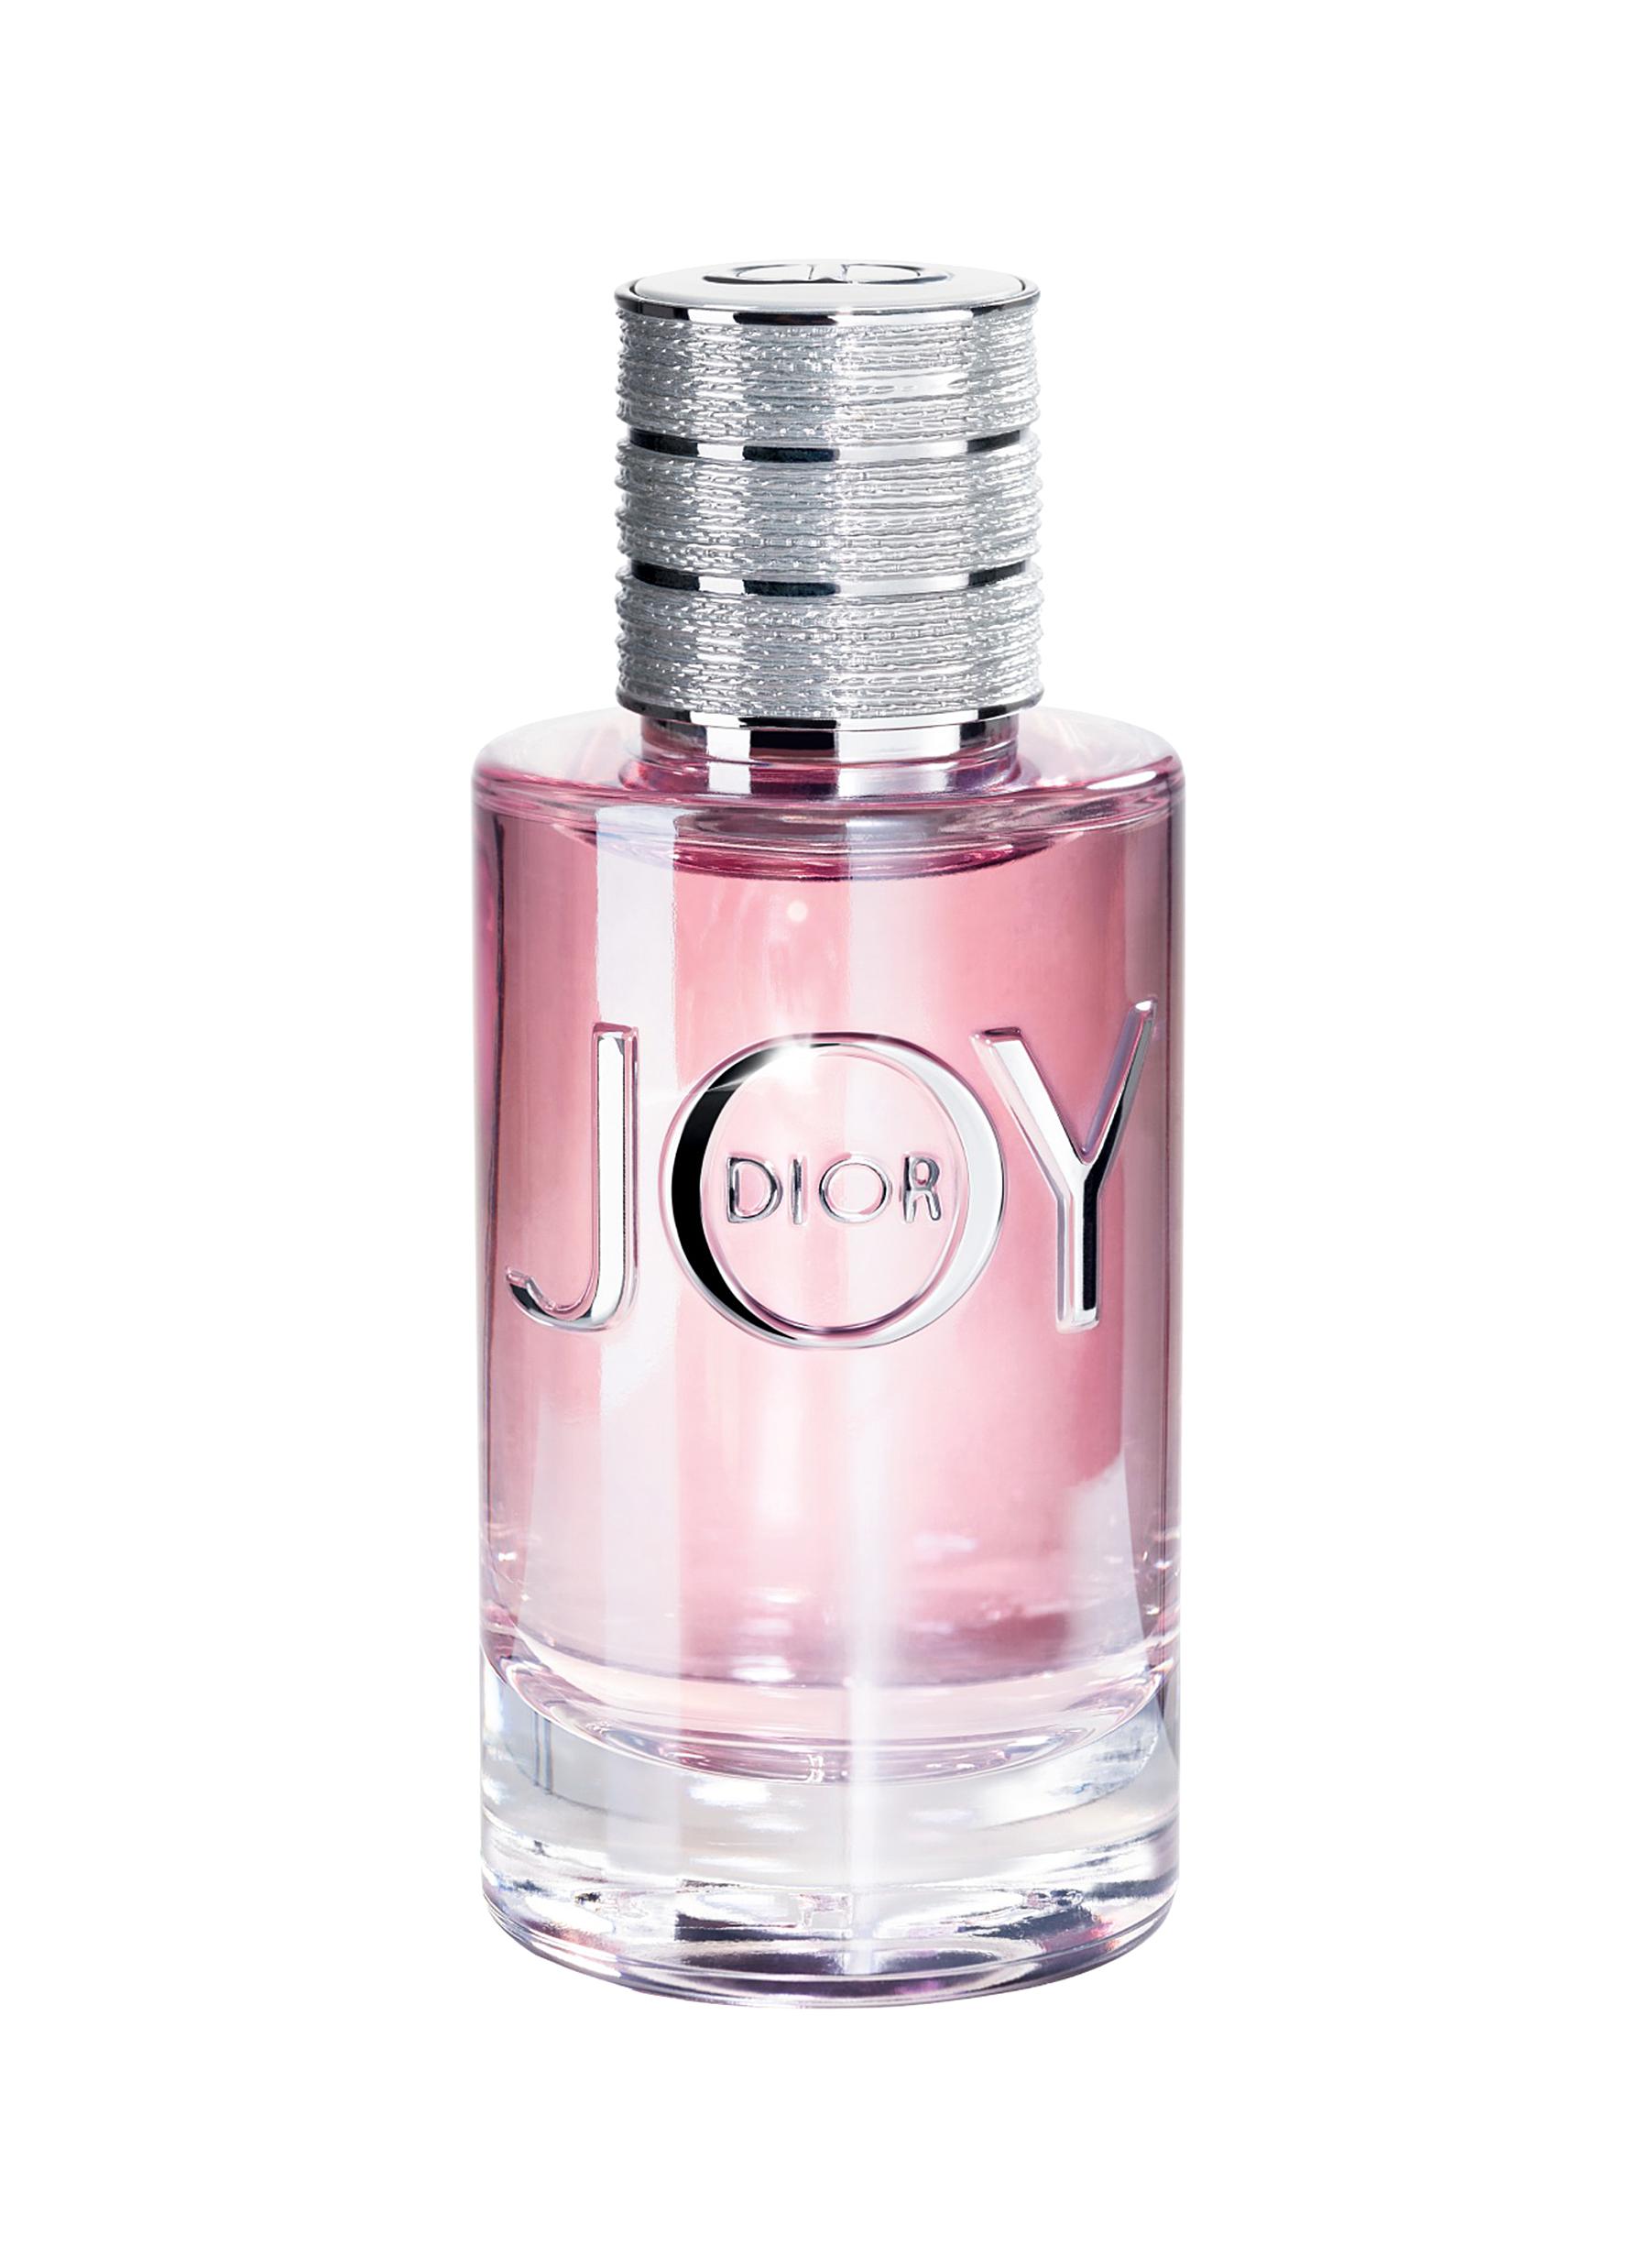 JOY by Dior Eau de Parfum 50ml 